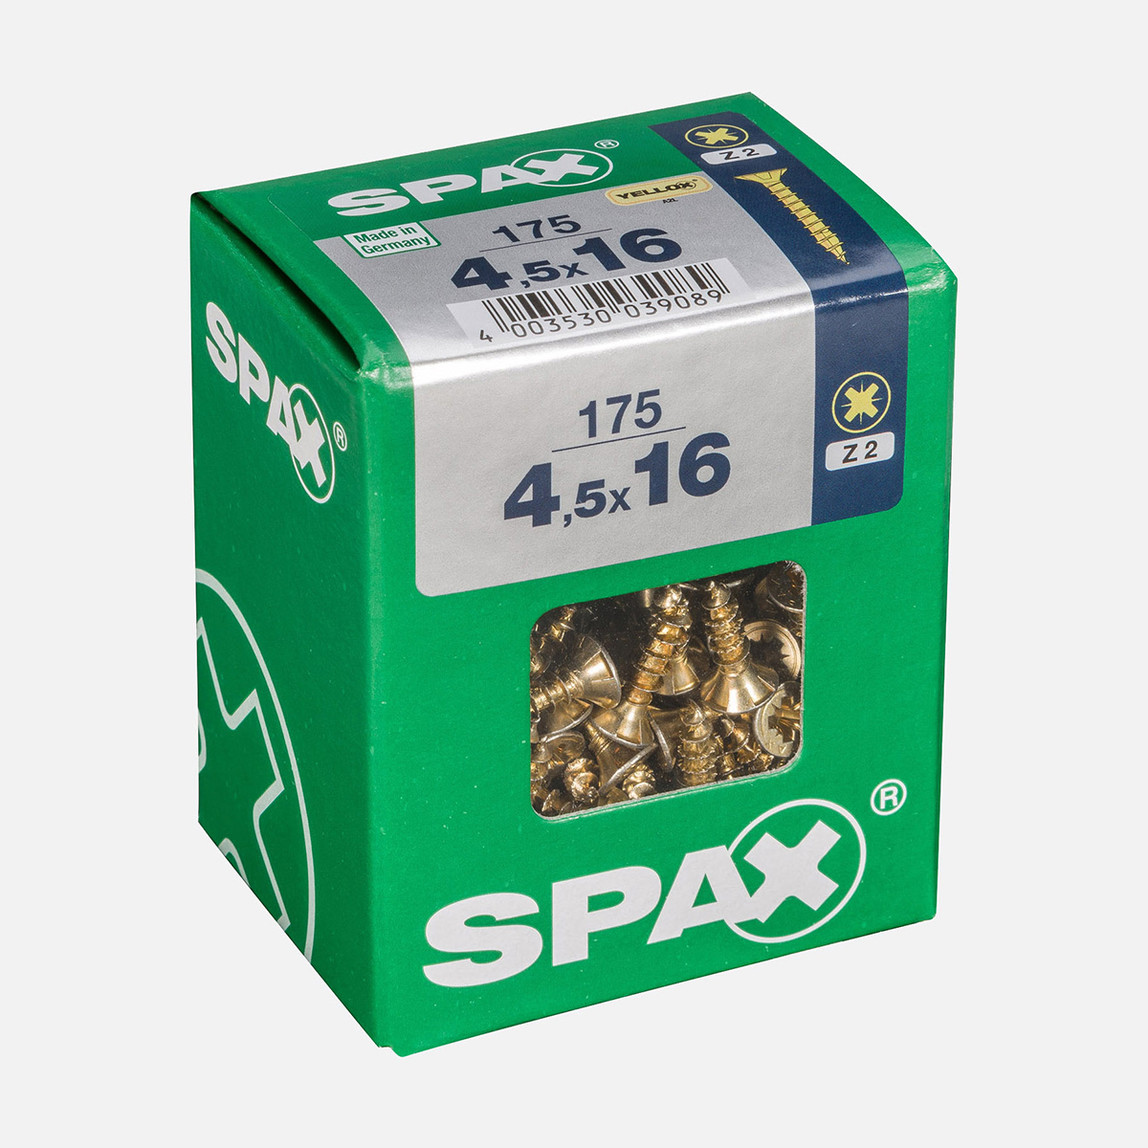    SPAX Havşa Vida Sarı 4.5X16     